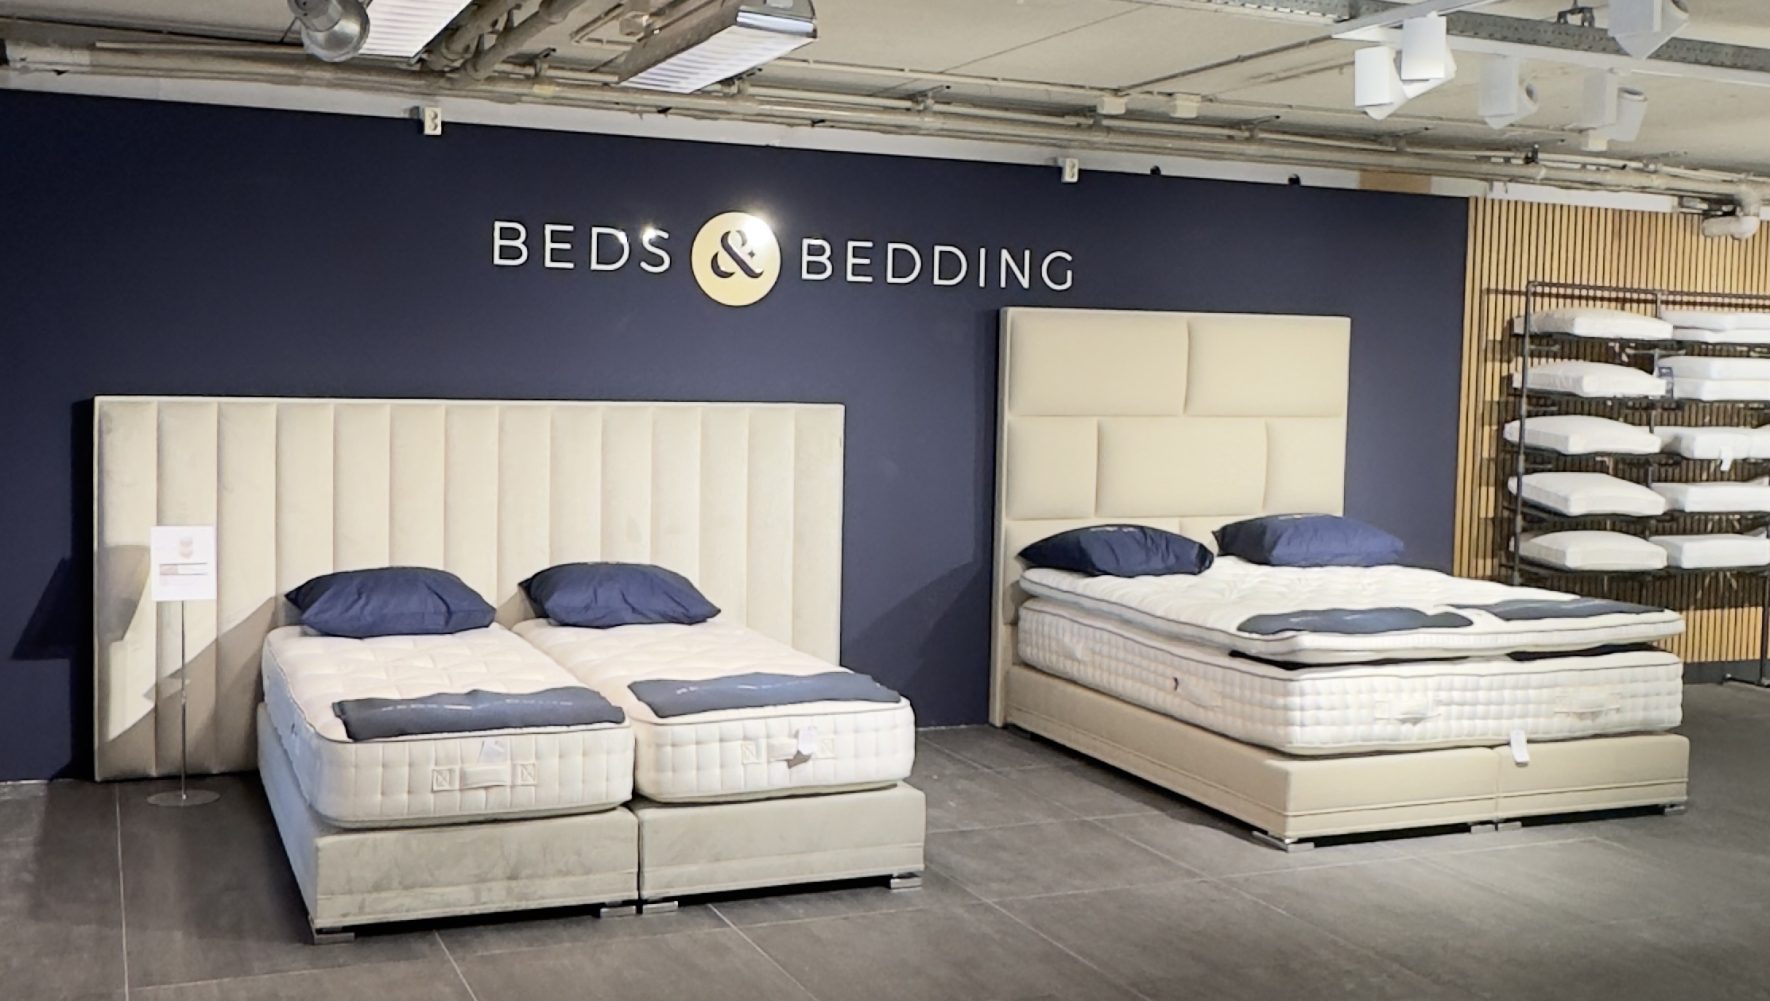 Luxe handgemaakte matrassen van natuurlijke materialen van Beds & Bedding. De beste beddenwinkel vlakbij Amersfoort.